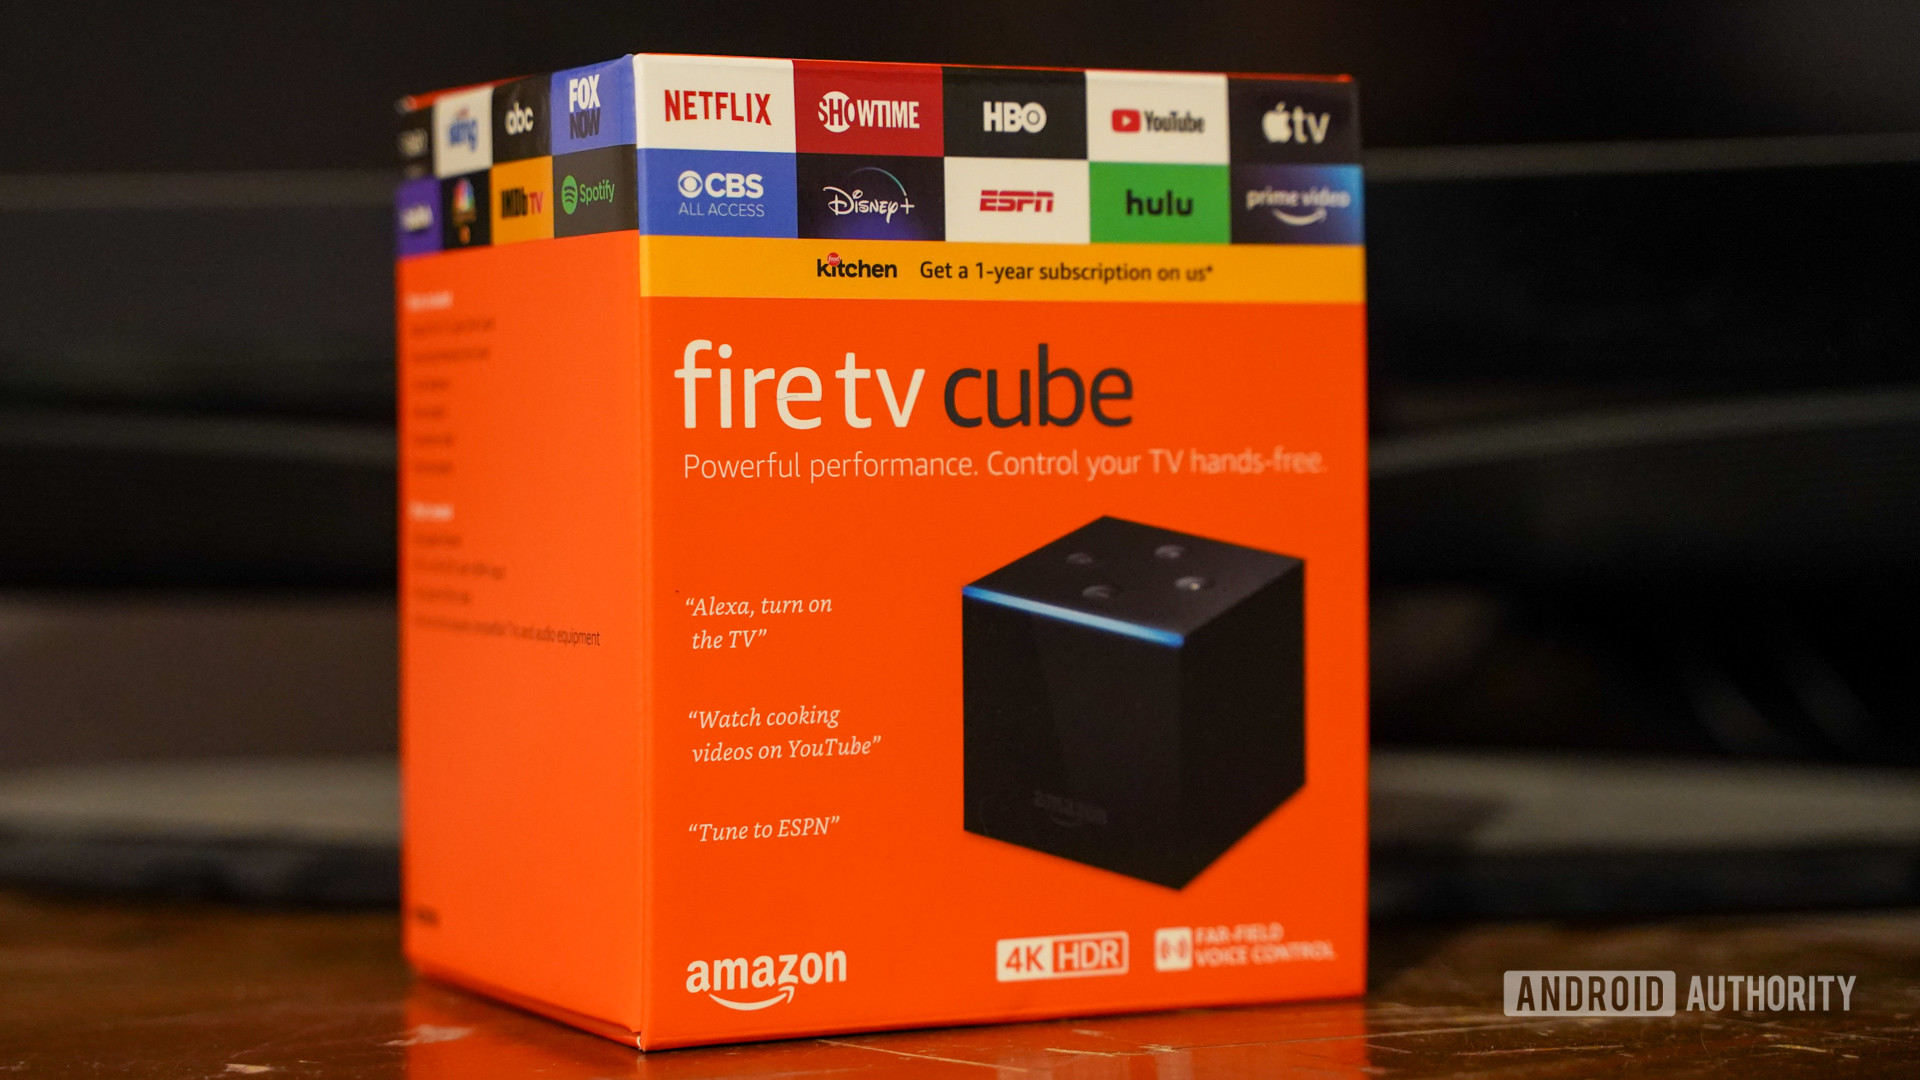 Amazon Fire TV Cube in box